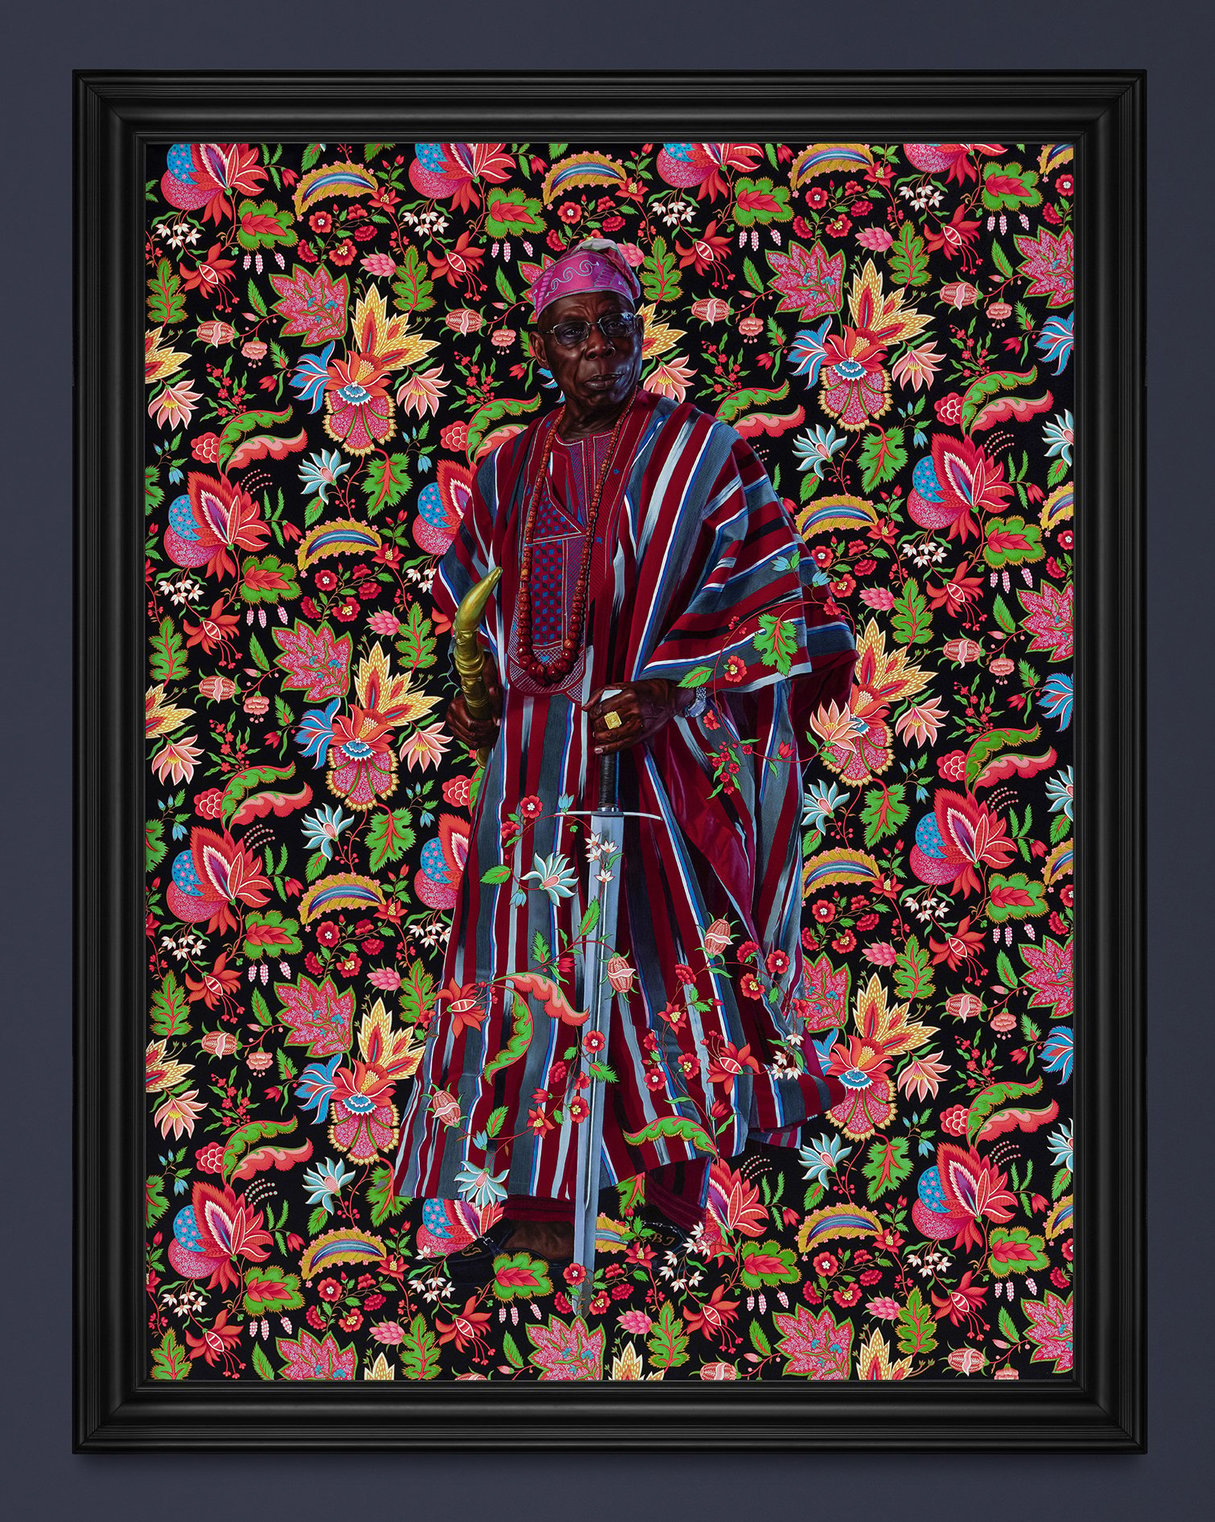 Olusegun Obasanjo, ancien président du Nigeria, vu par l'artiste Kehinde Wiley – un portrait exposé au musée du quai Branly, à Paris. &copy; Tanguy Beurdeley/Courtesy Musée du Quai Branly